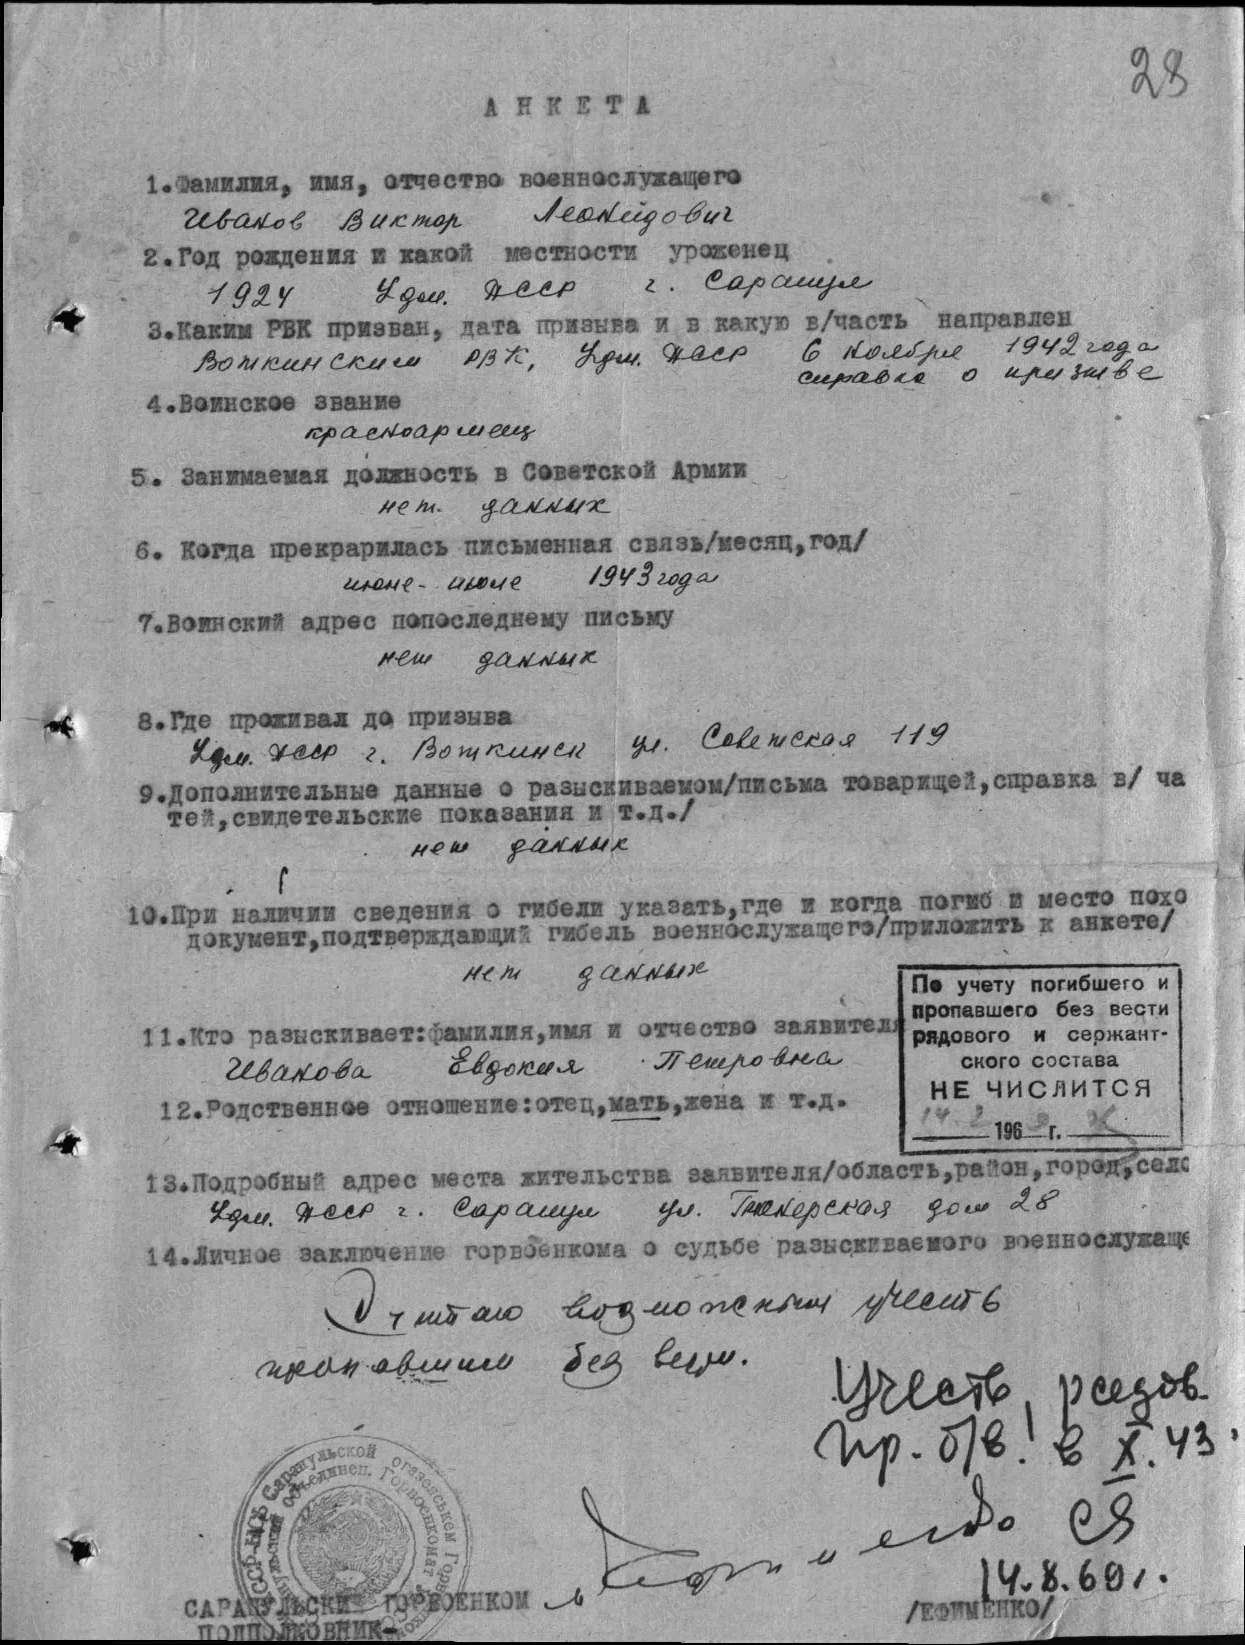 Документ послевоенного периода о пропавшем без вести